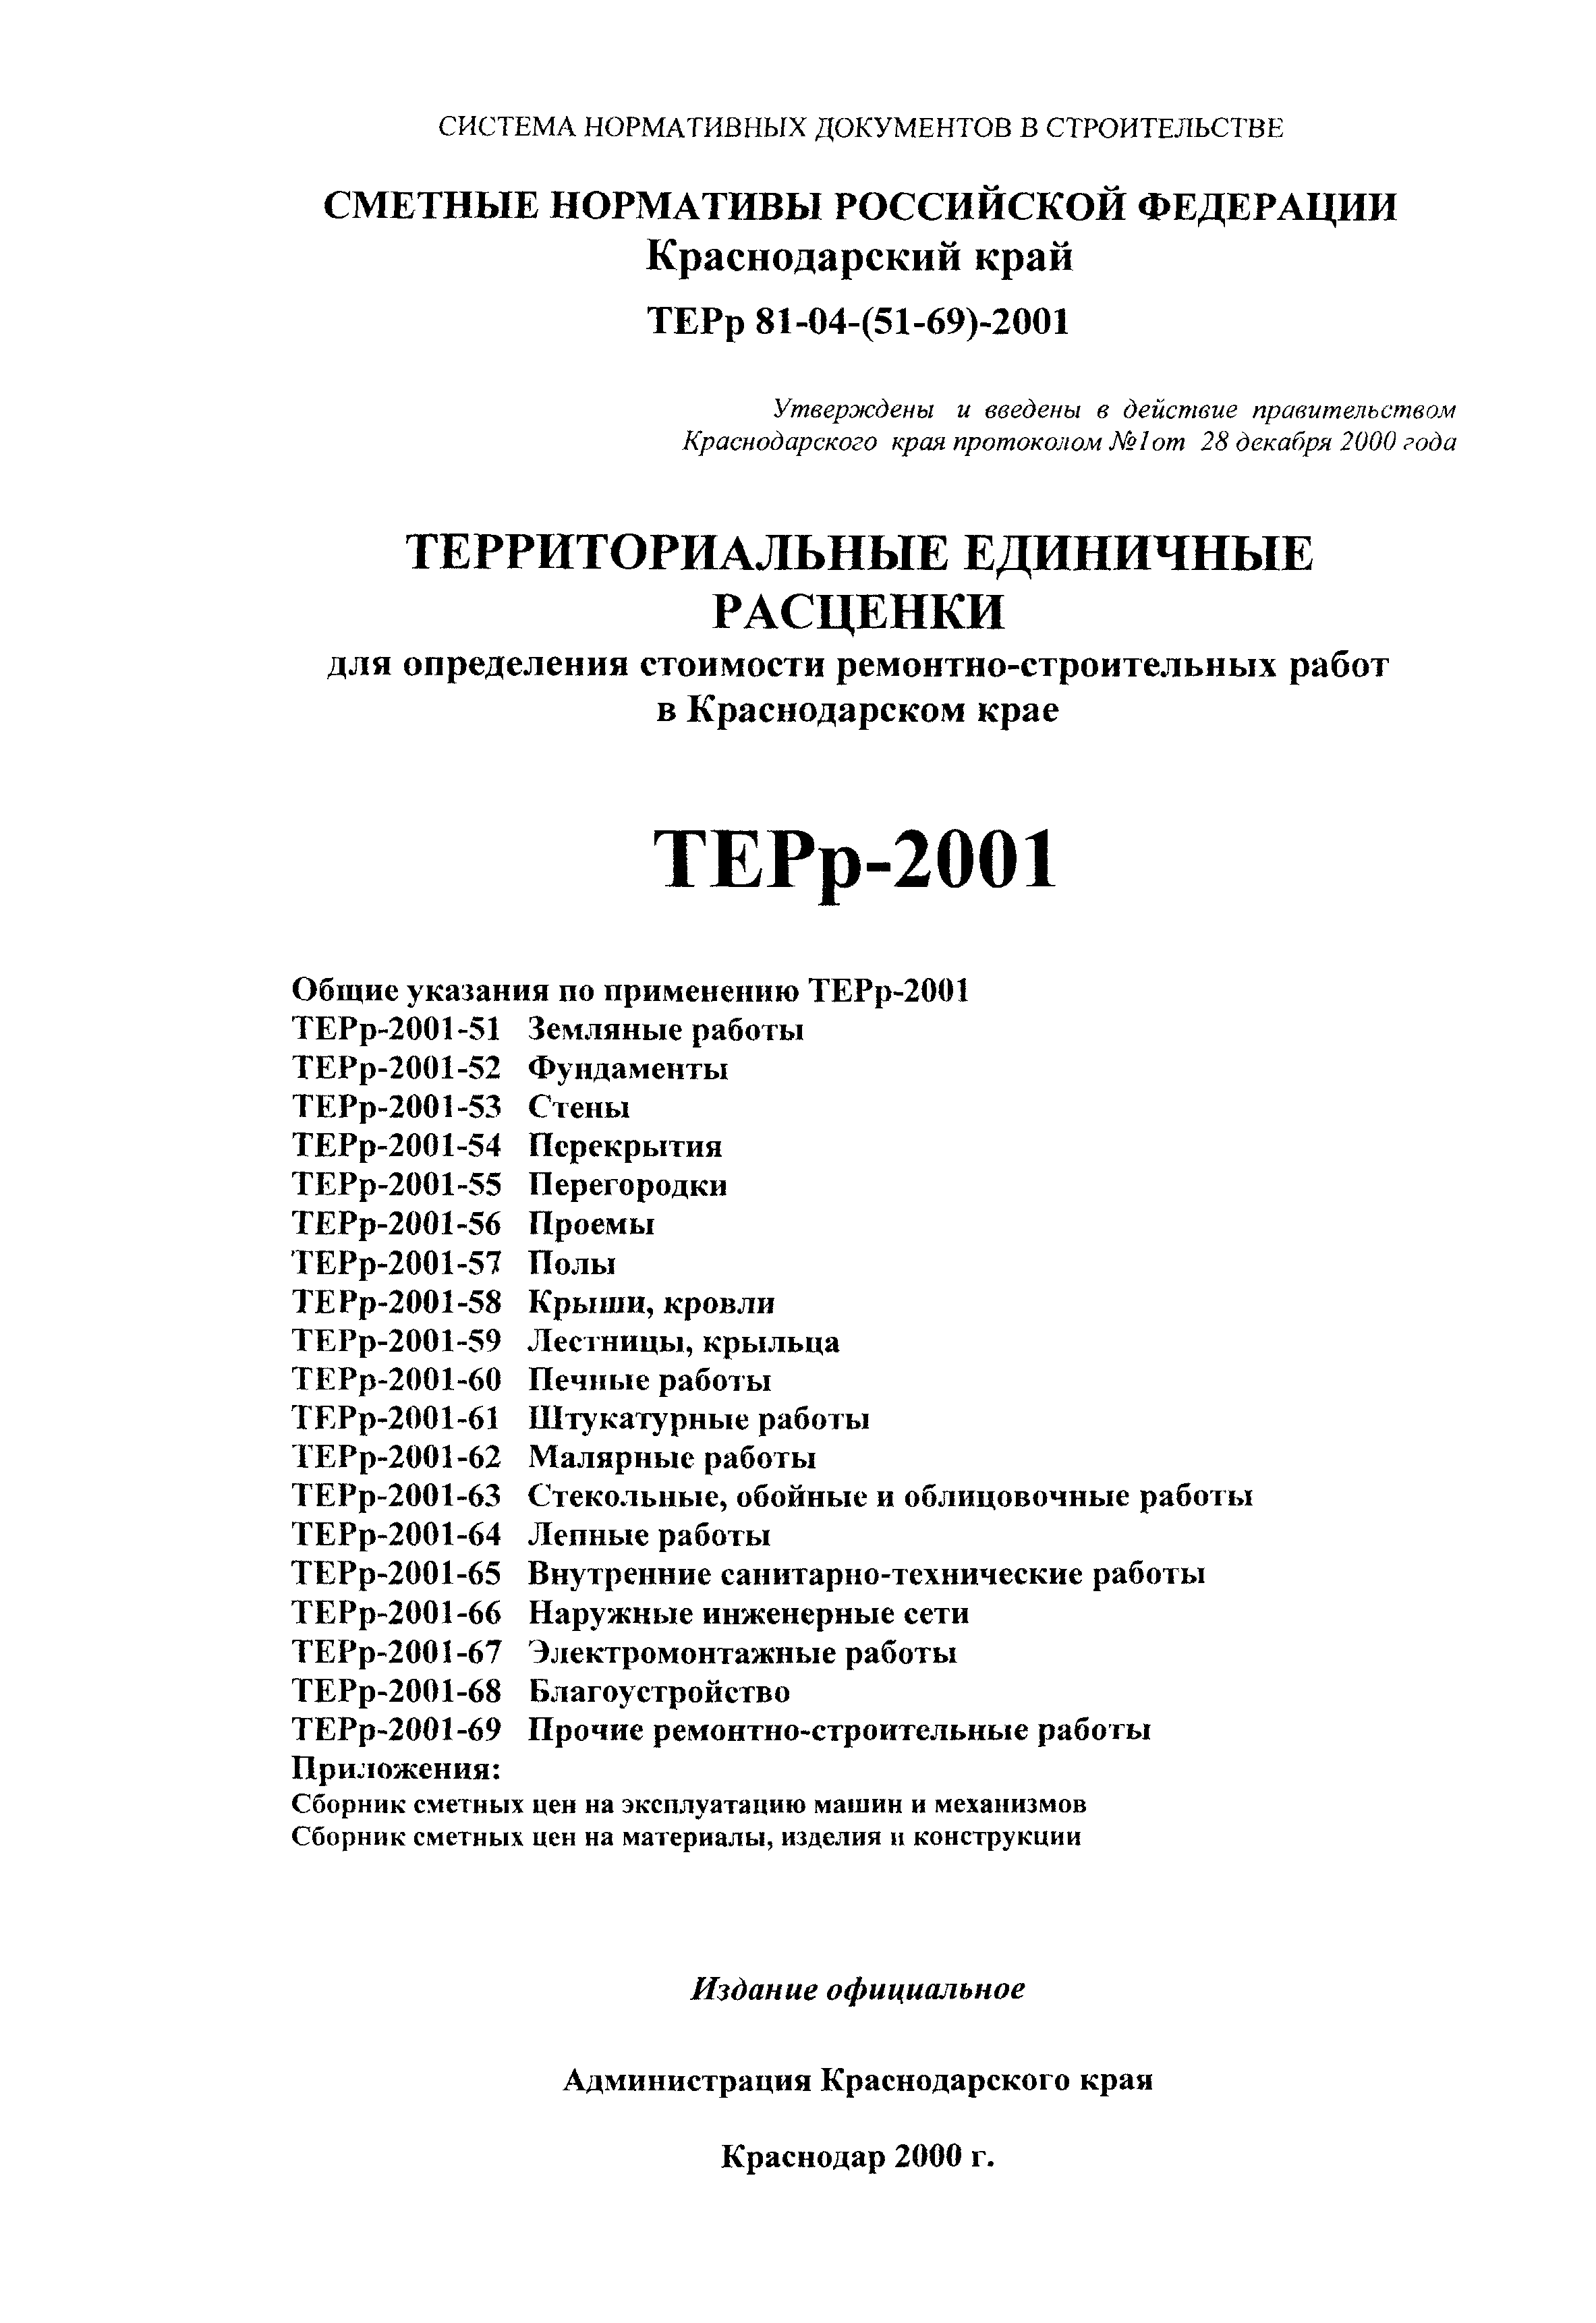 ТЕРр Краснодарского края 2001-53